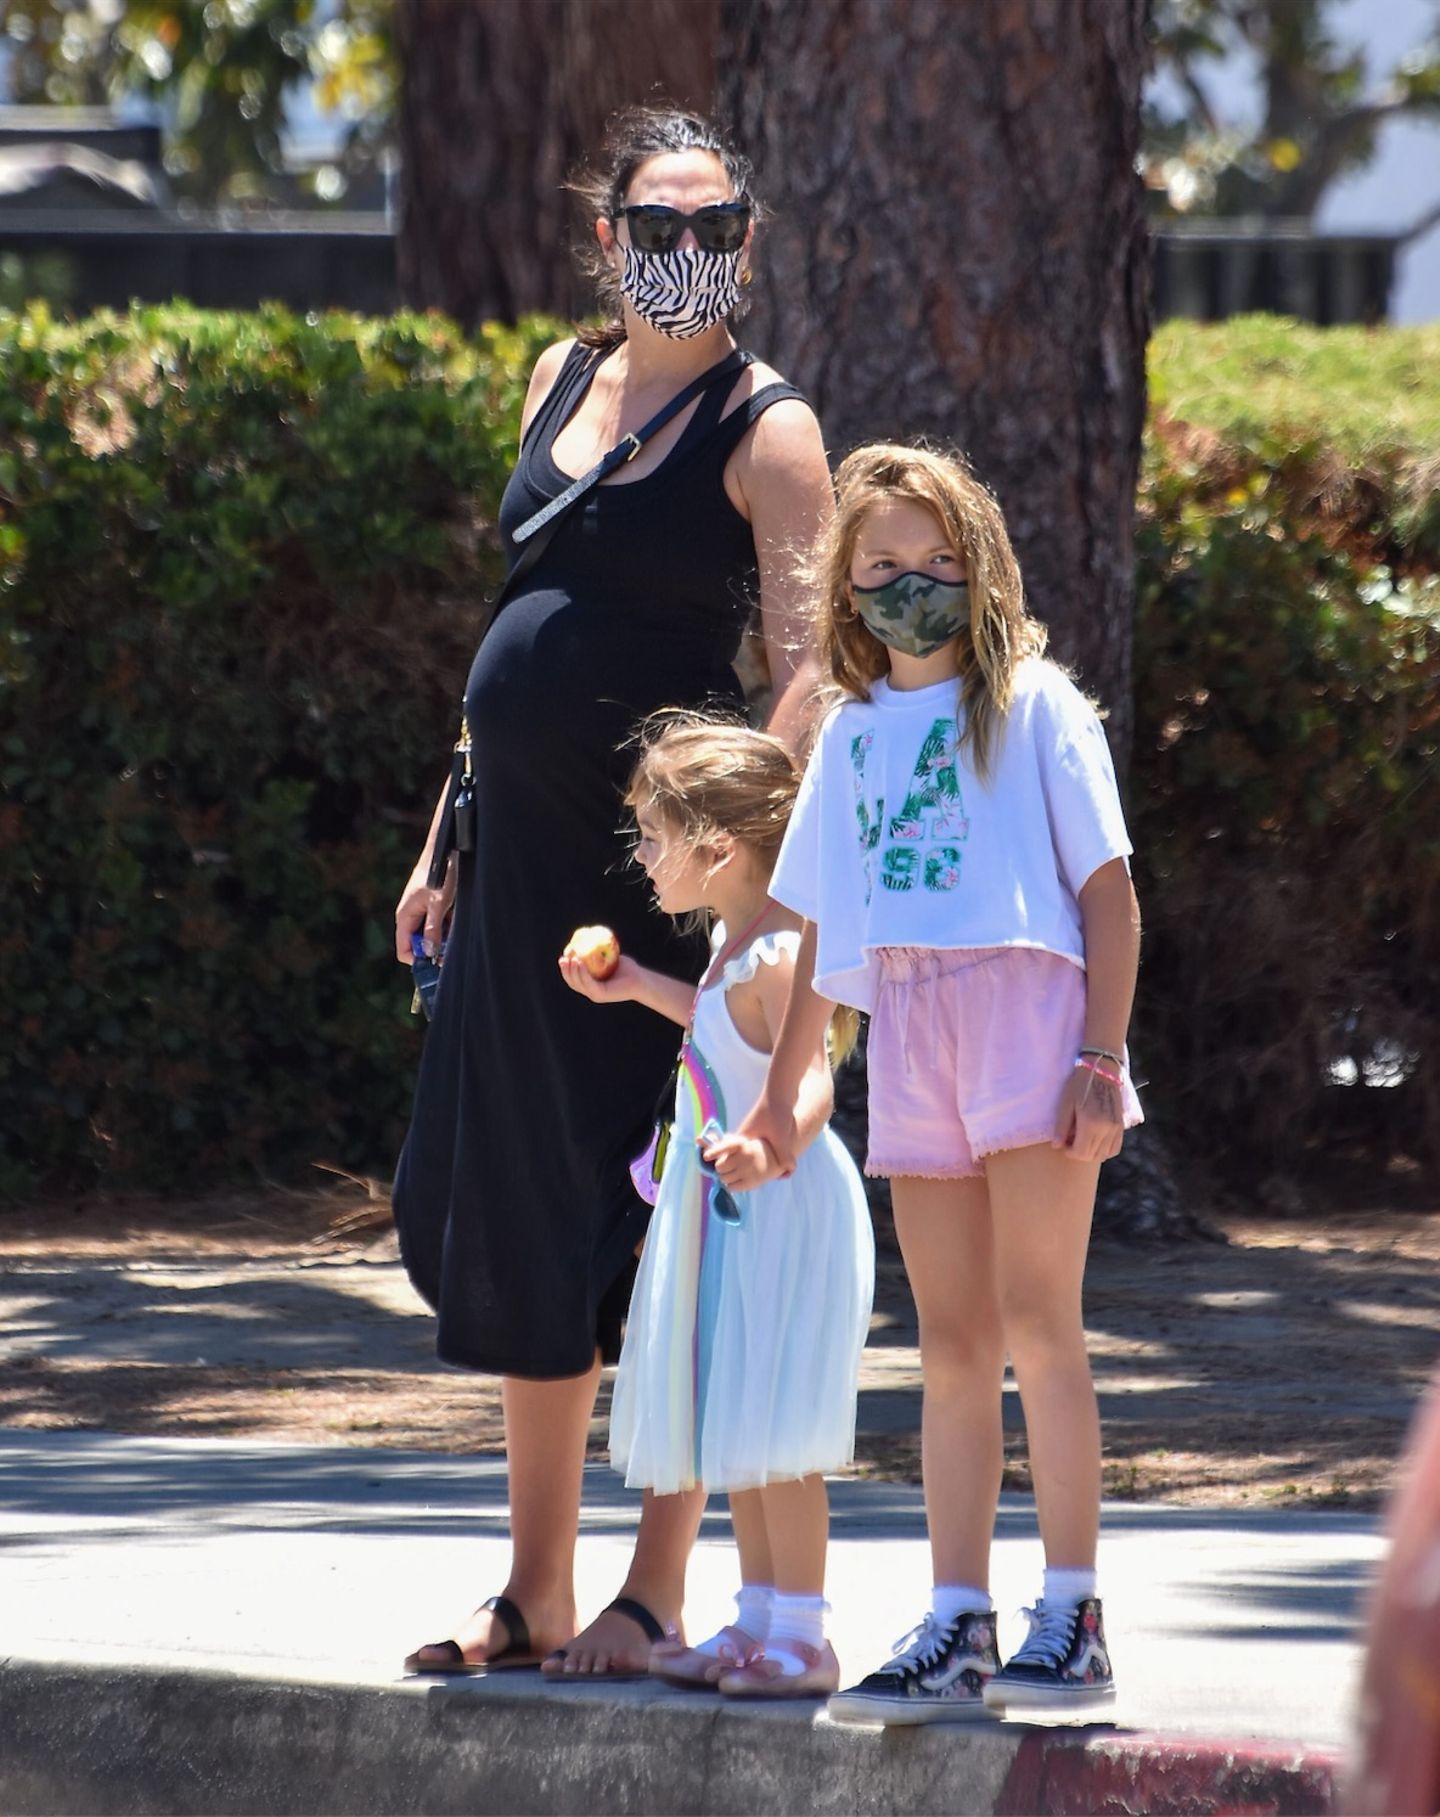 Es ist mehr als offensichtlich: Gal Gadot wird bald zum dritten Mal Mama. Ganz entspannt hüllt die "Wonderwoman"-Darstellerin ihre Babykugel in ein schwarzes Kleid und stylt eine Sonnenbrille sowie ein Paar Sandalen dazu. Wann genau der Nachwuchs zur Welt kommt, hat der Hollywood-Star bisher noch nicht verraten.